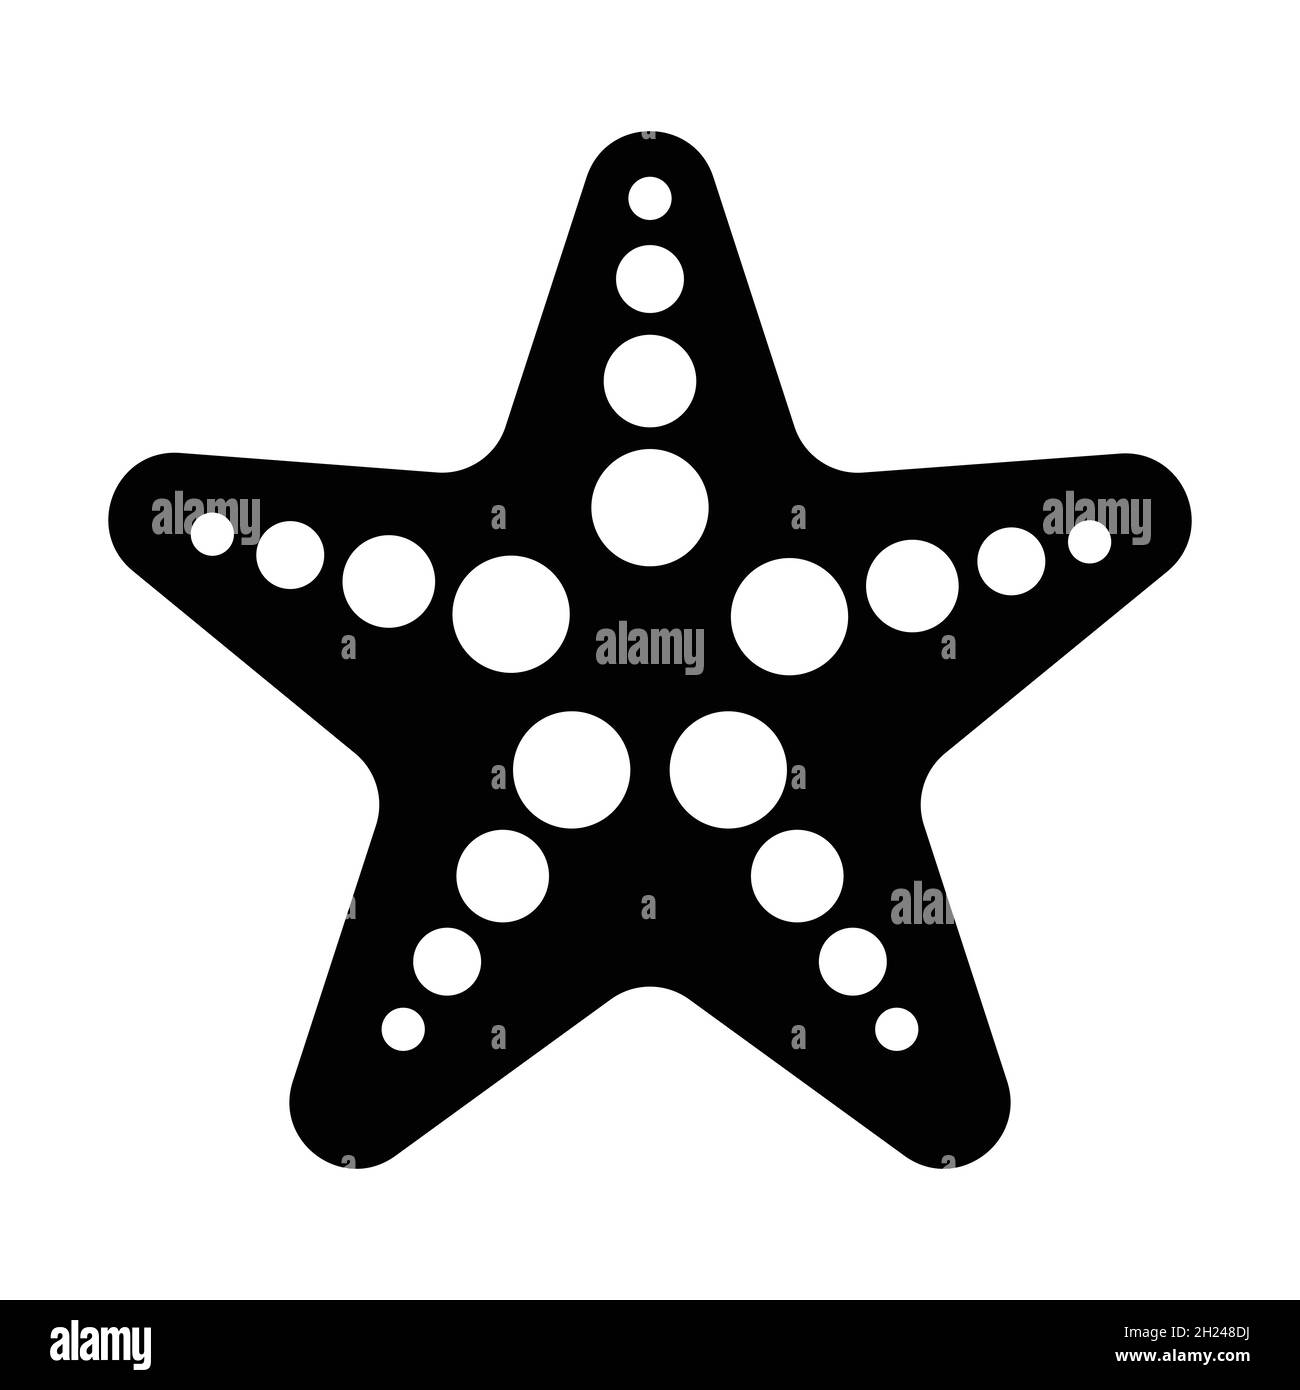 vecteur d'icône starfish pour la conception graphique, logo, site web, médias sociaux, application mobile,Illustration de l'interface utilisateur Illustration de Vecteur